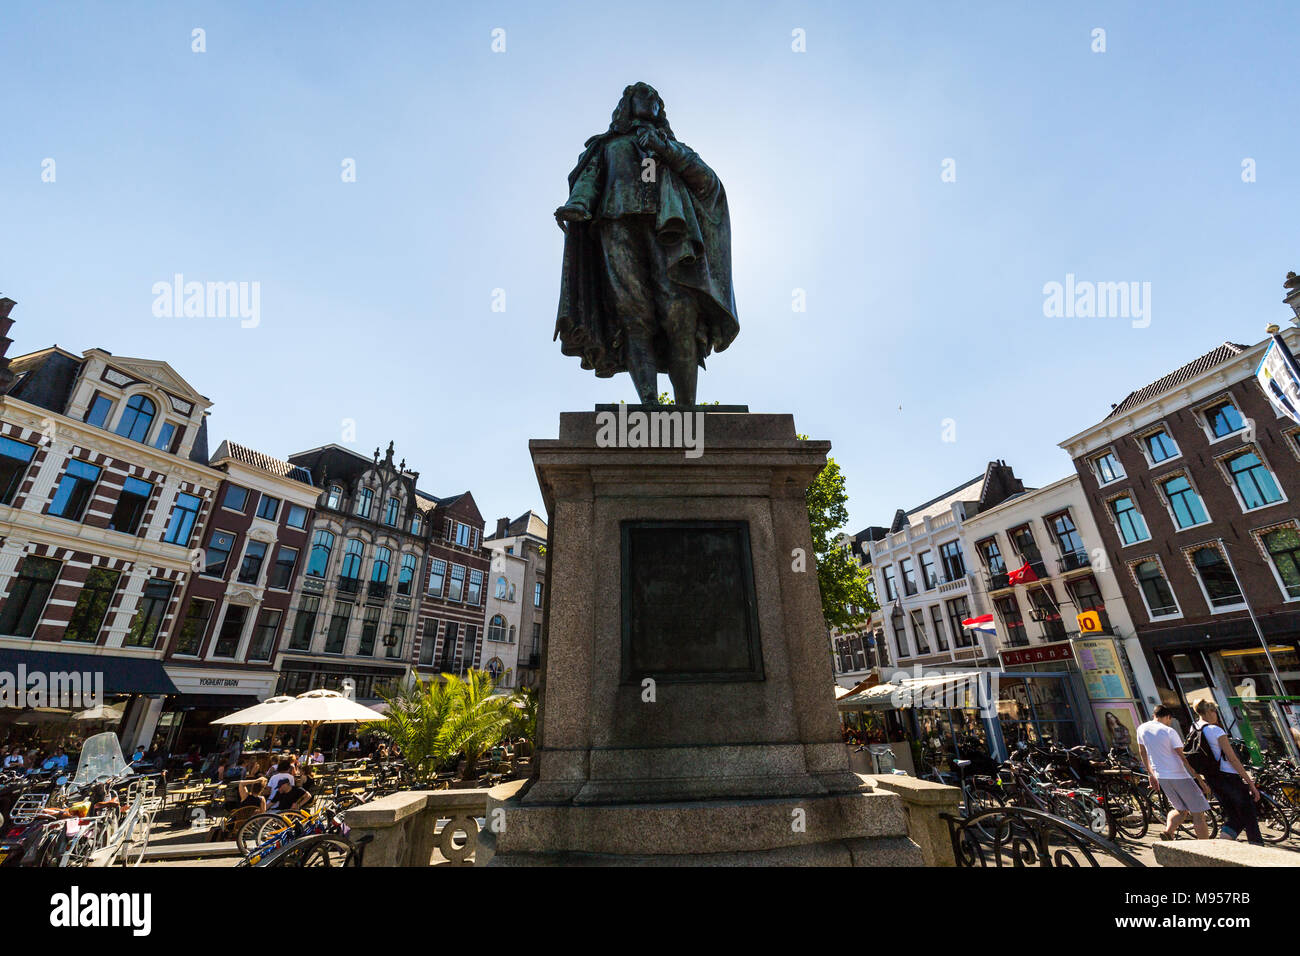 DEN HAAG, Paesi Bassi - 26 Maggio 2017: Vista di Standbeeld Johan de Witt Statua in plaats piazza nel centro della città di L'Aia il 26 maggio 2017. Esso Foto Stock